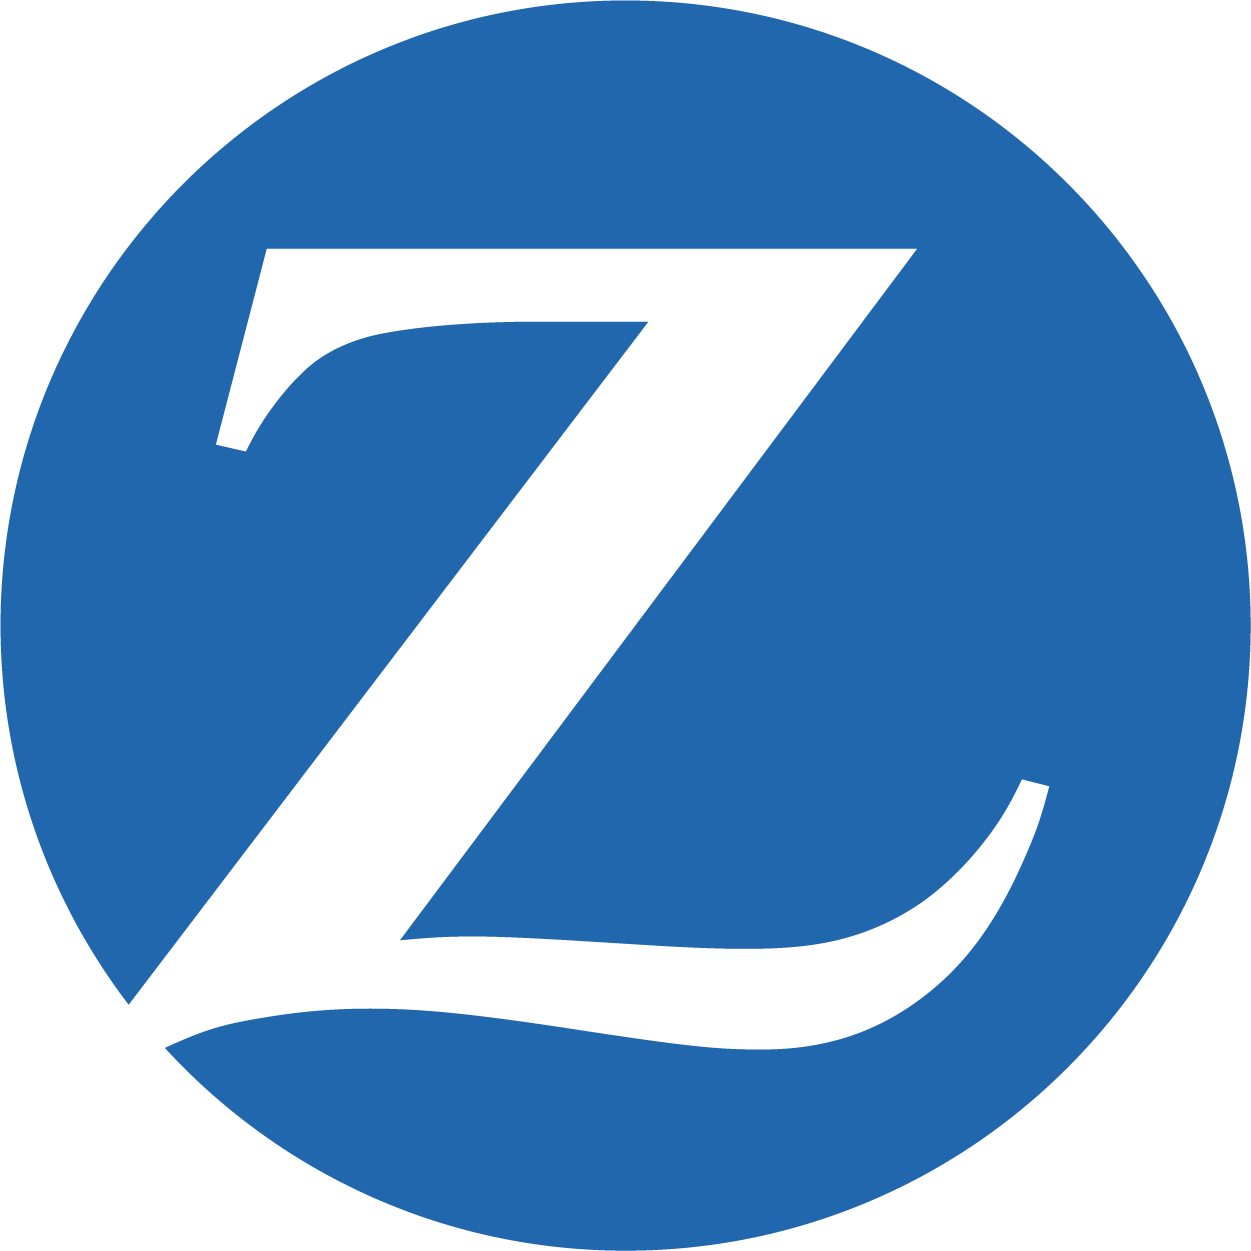 Zurich logo mobile